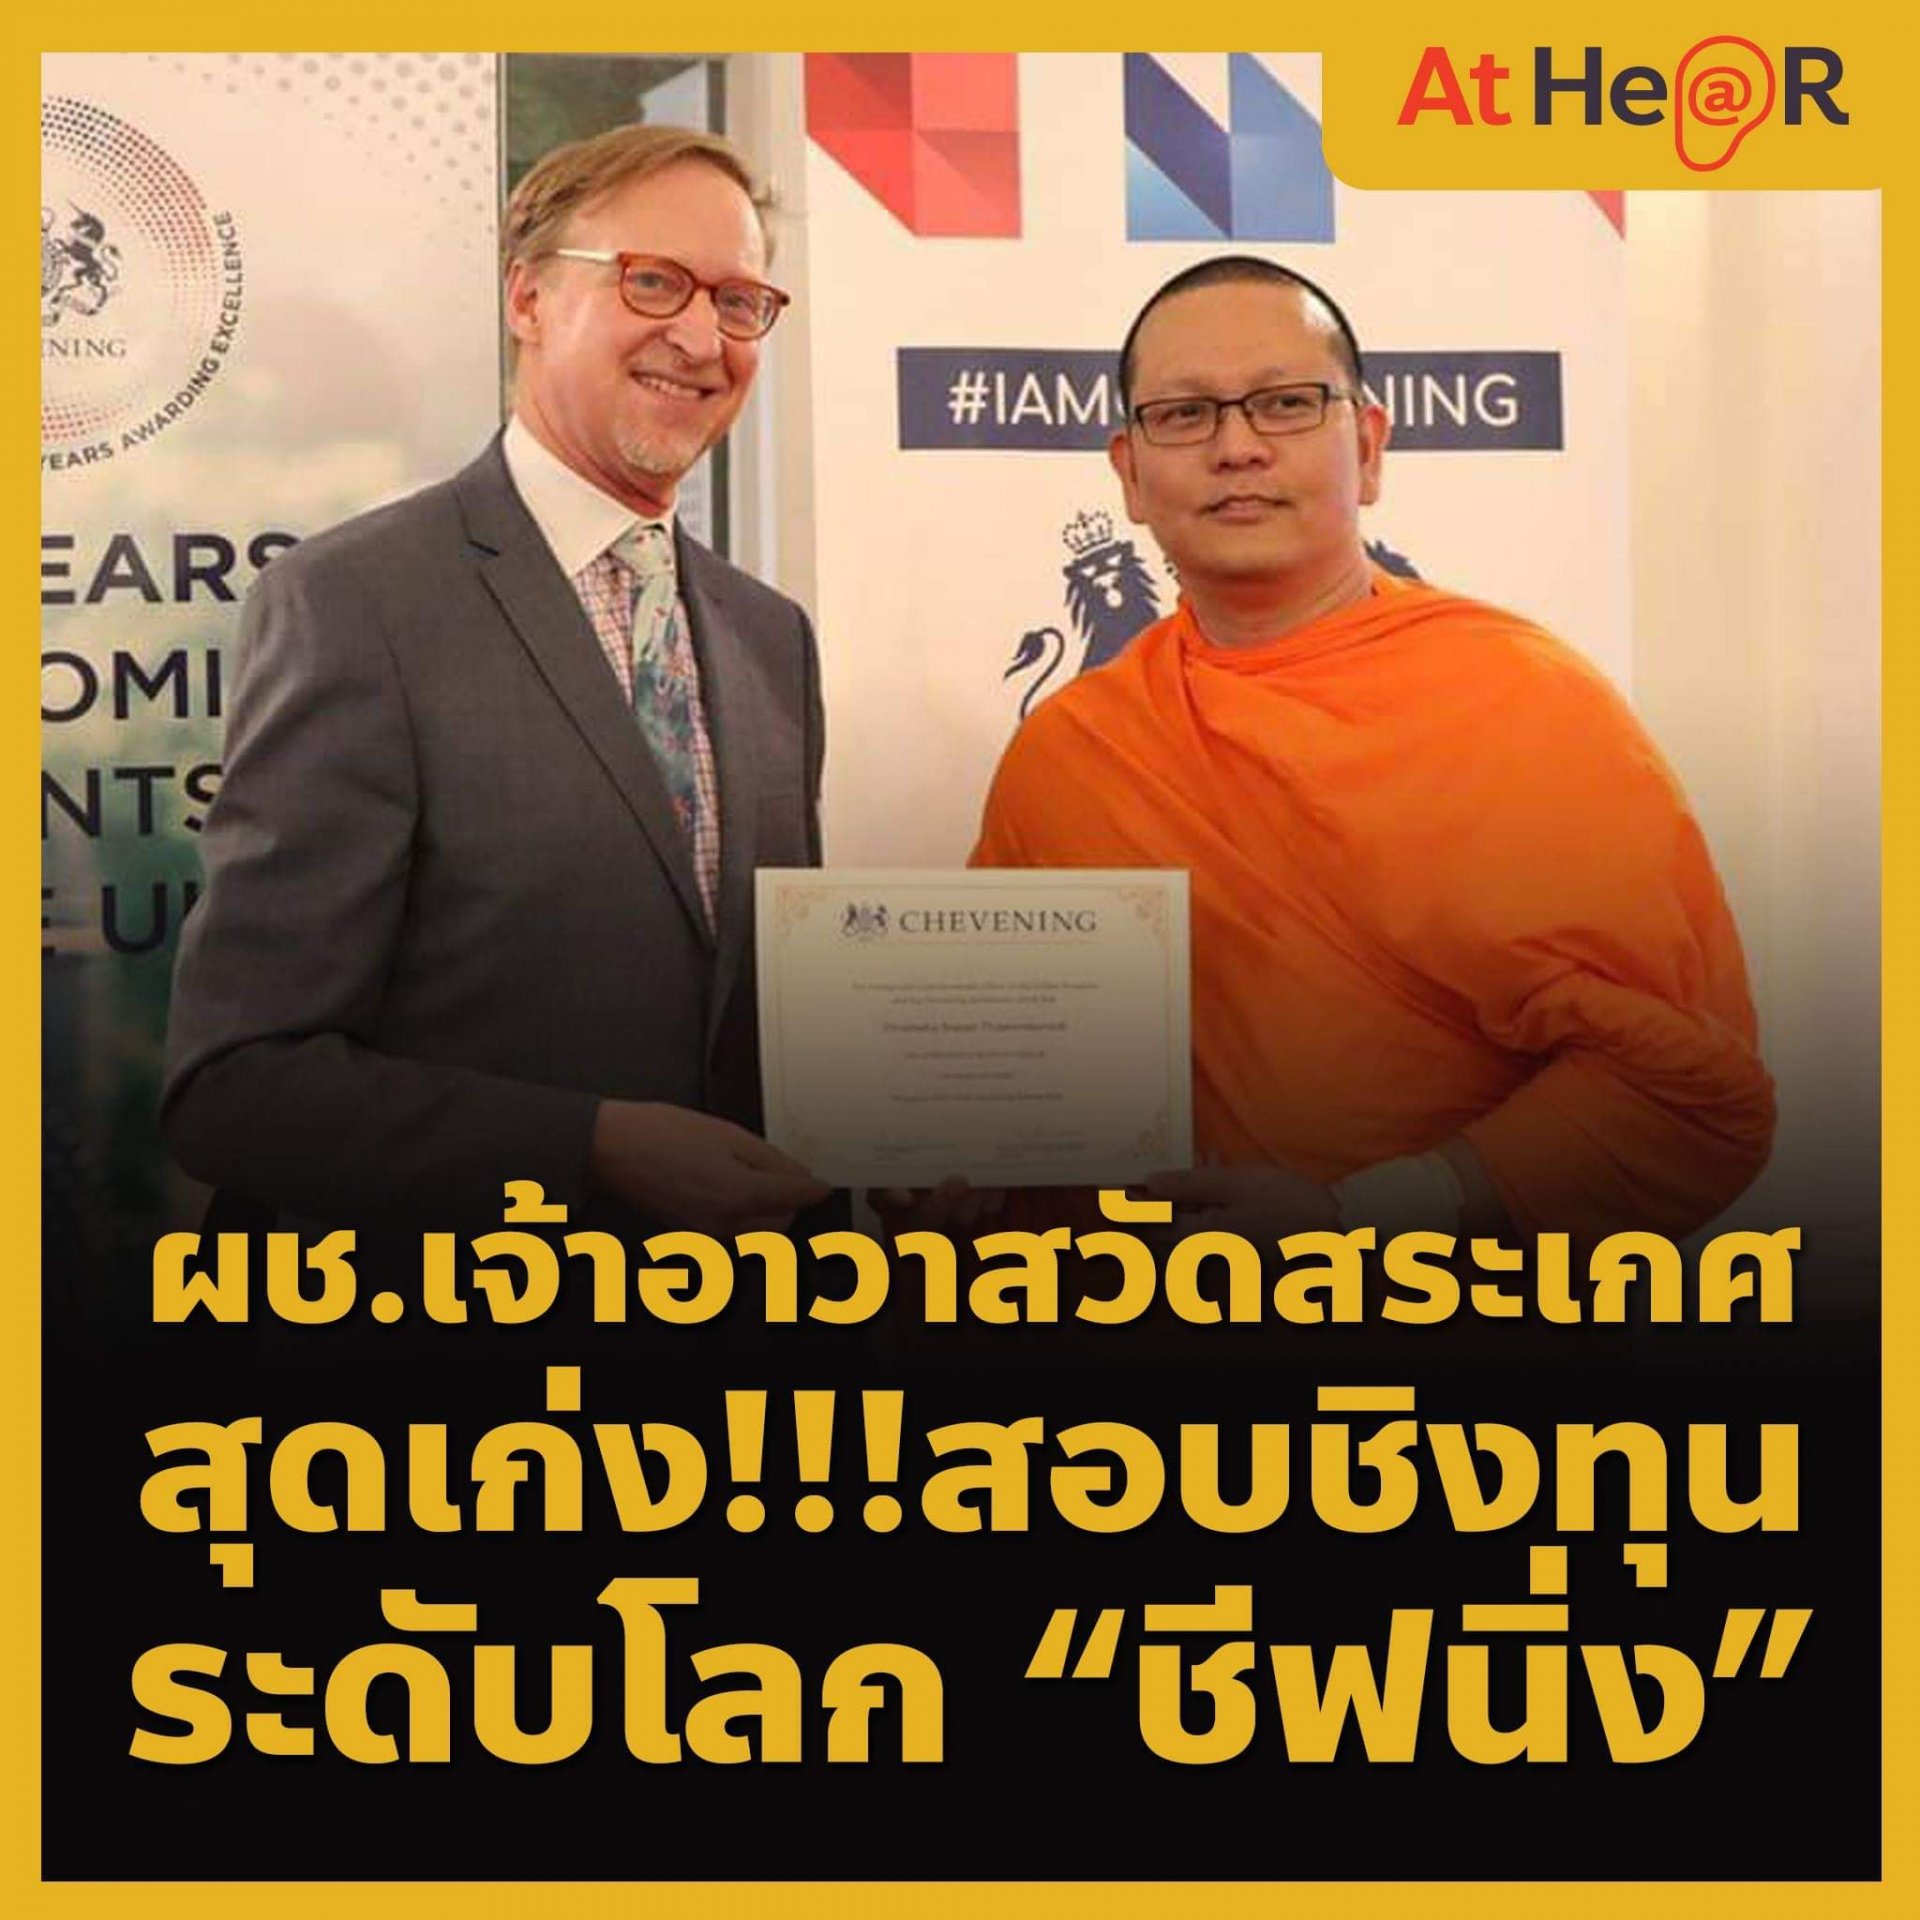 ผู้ช่วยเจ้าอาวาสวัดสระเกศฯ สุดเก่งสอบชิงทุน “ชีฟนิ่ง” ทุนการศึกษาระดับโลก เป็นพระสงฆ์รูปแรกของประเทศไทย